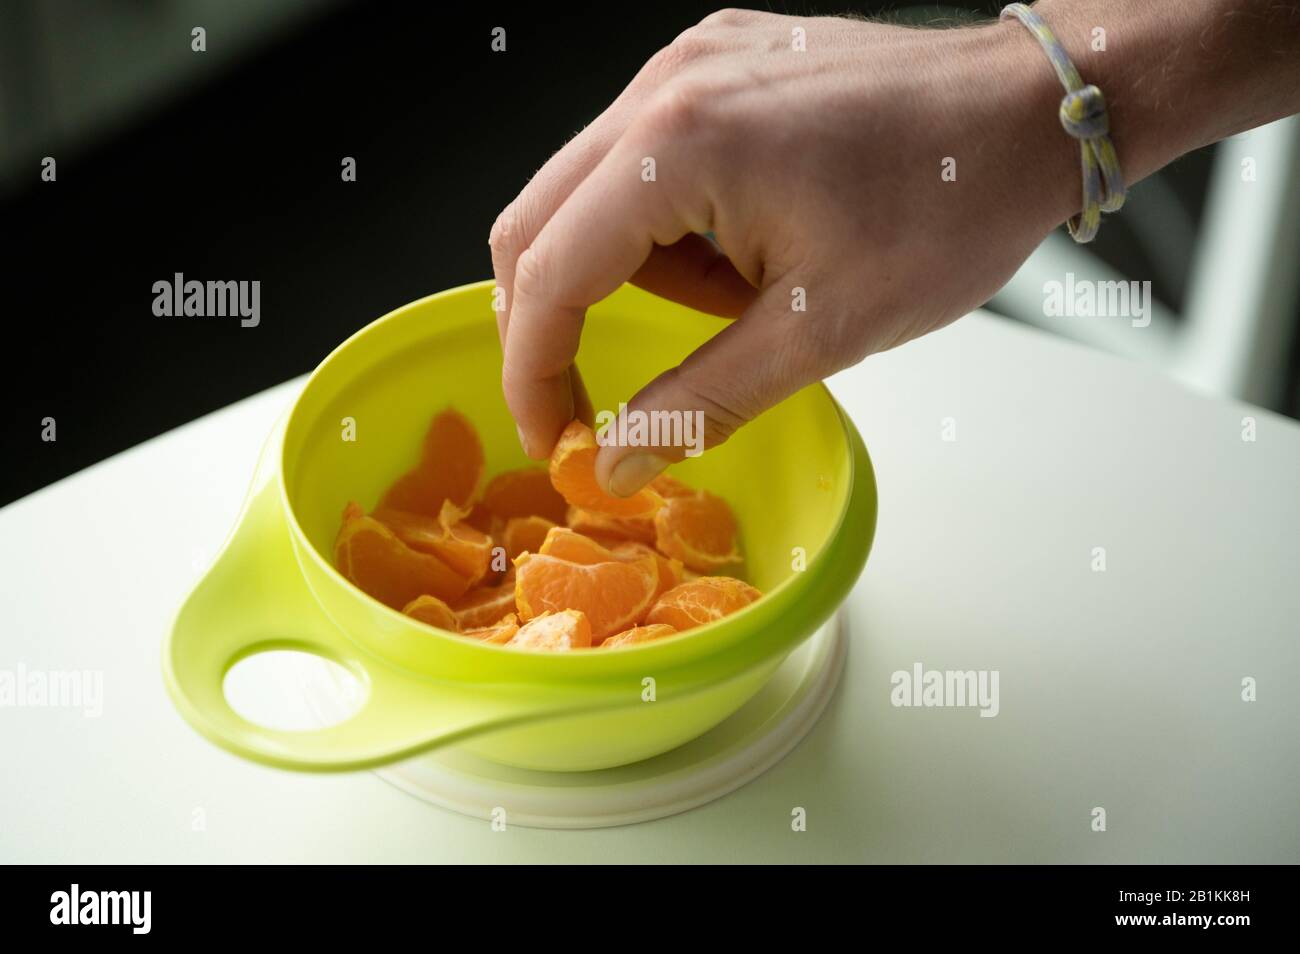 Berlin, Deutschland. Februar 2020. Ein Mann nimmt Mandarinen aus einer  Frischektin der Marke Tupperware. Das Unternehmen Tupperware aus Orlando im  sonnigen Florida befindet sich in einer tiefen Krise. Der zunehmende  Wettbewerb auf